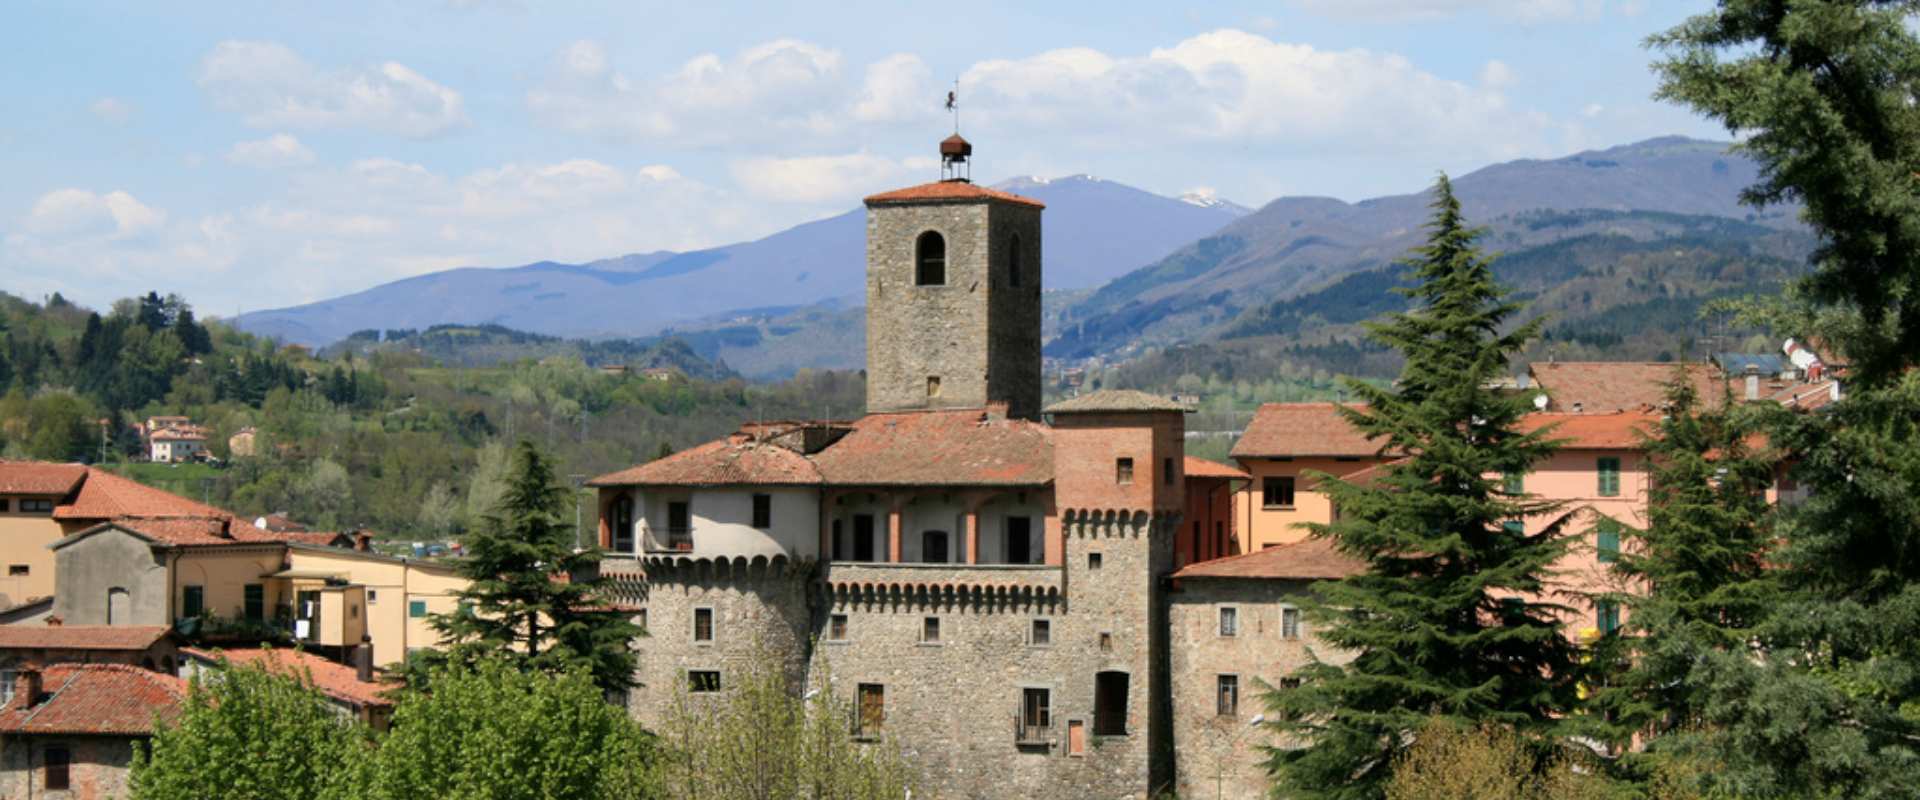 La Rocca Ariostesca di Castelnuovo Garfagnana